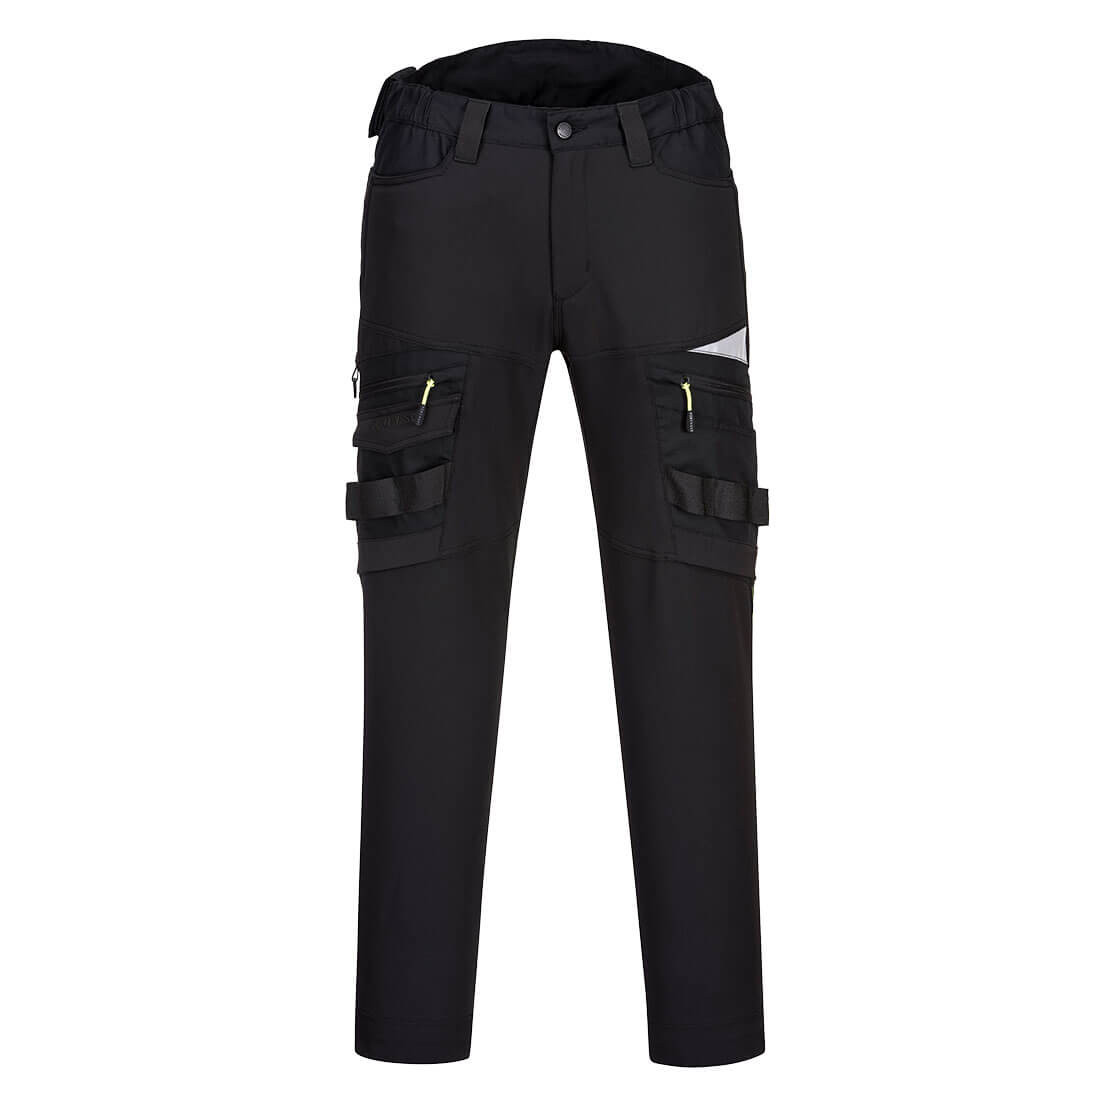 DX4 Pantaloni Service - Abbigliamento di protezione